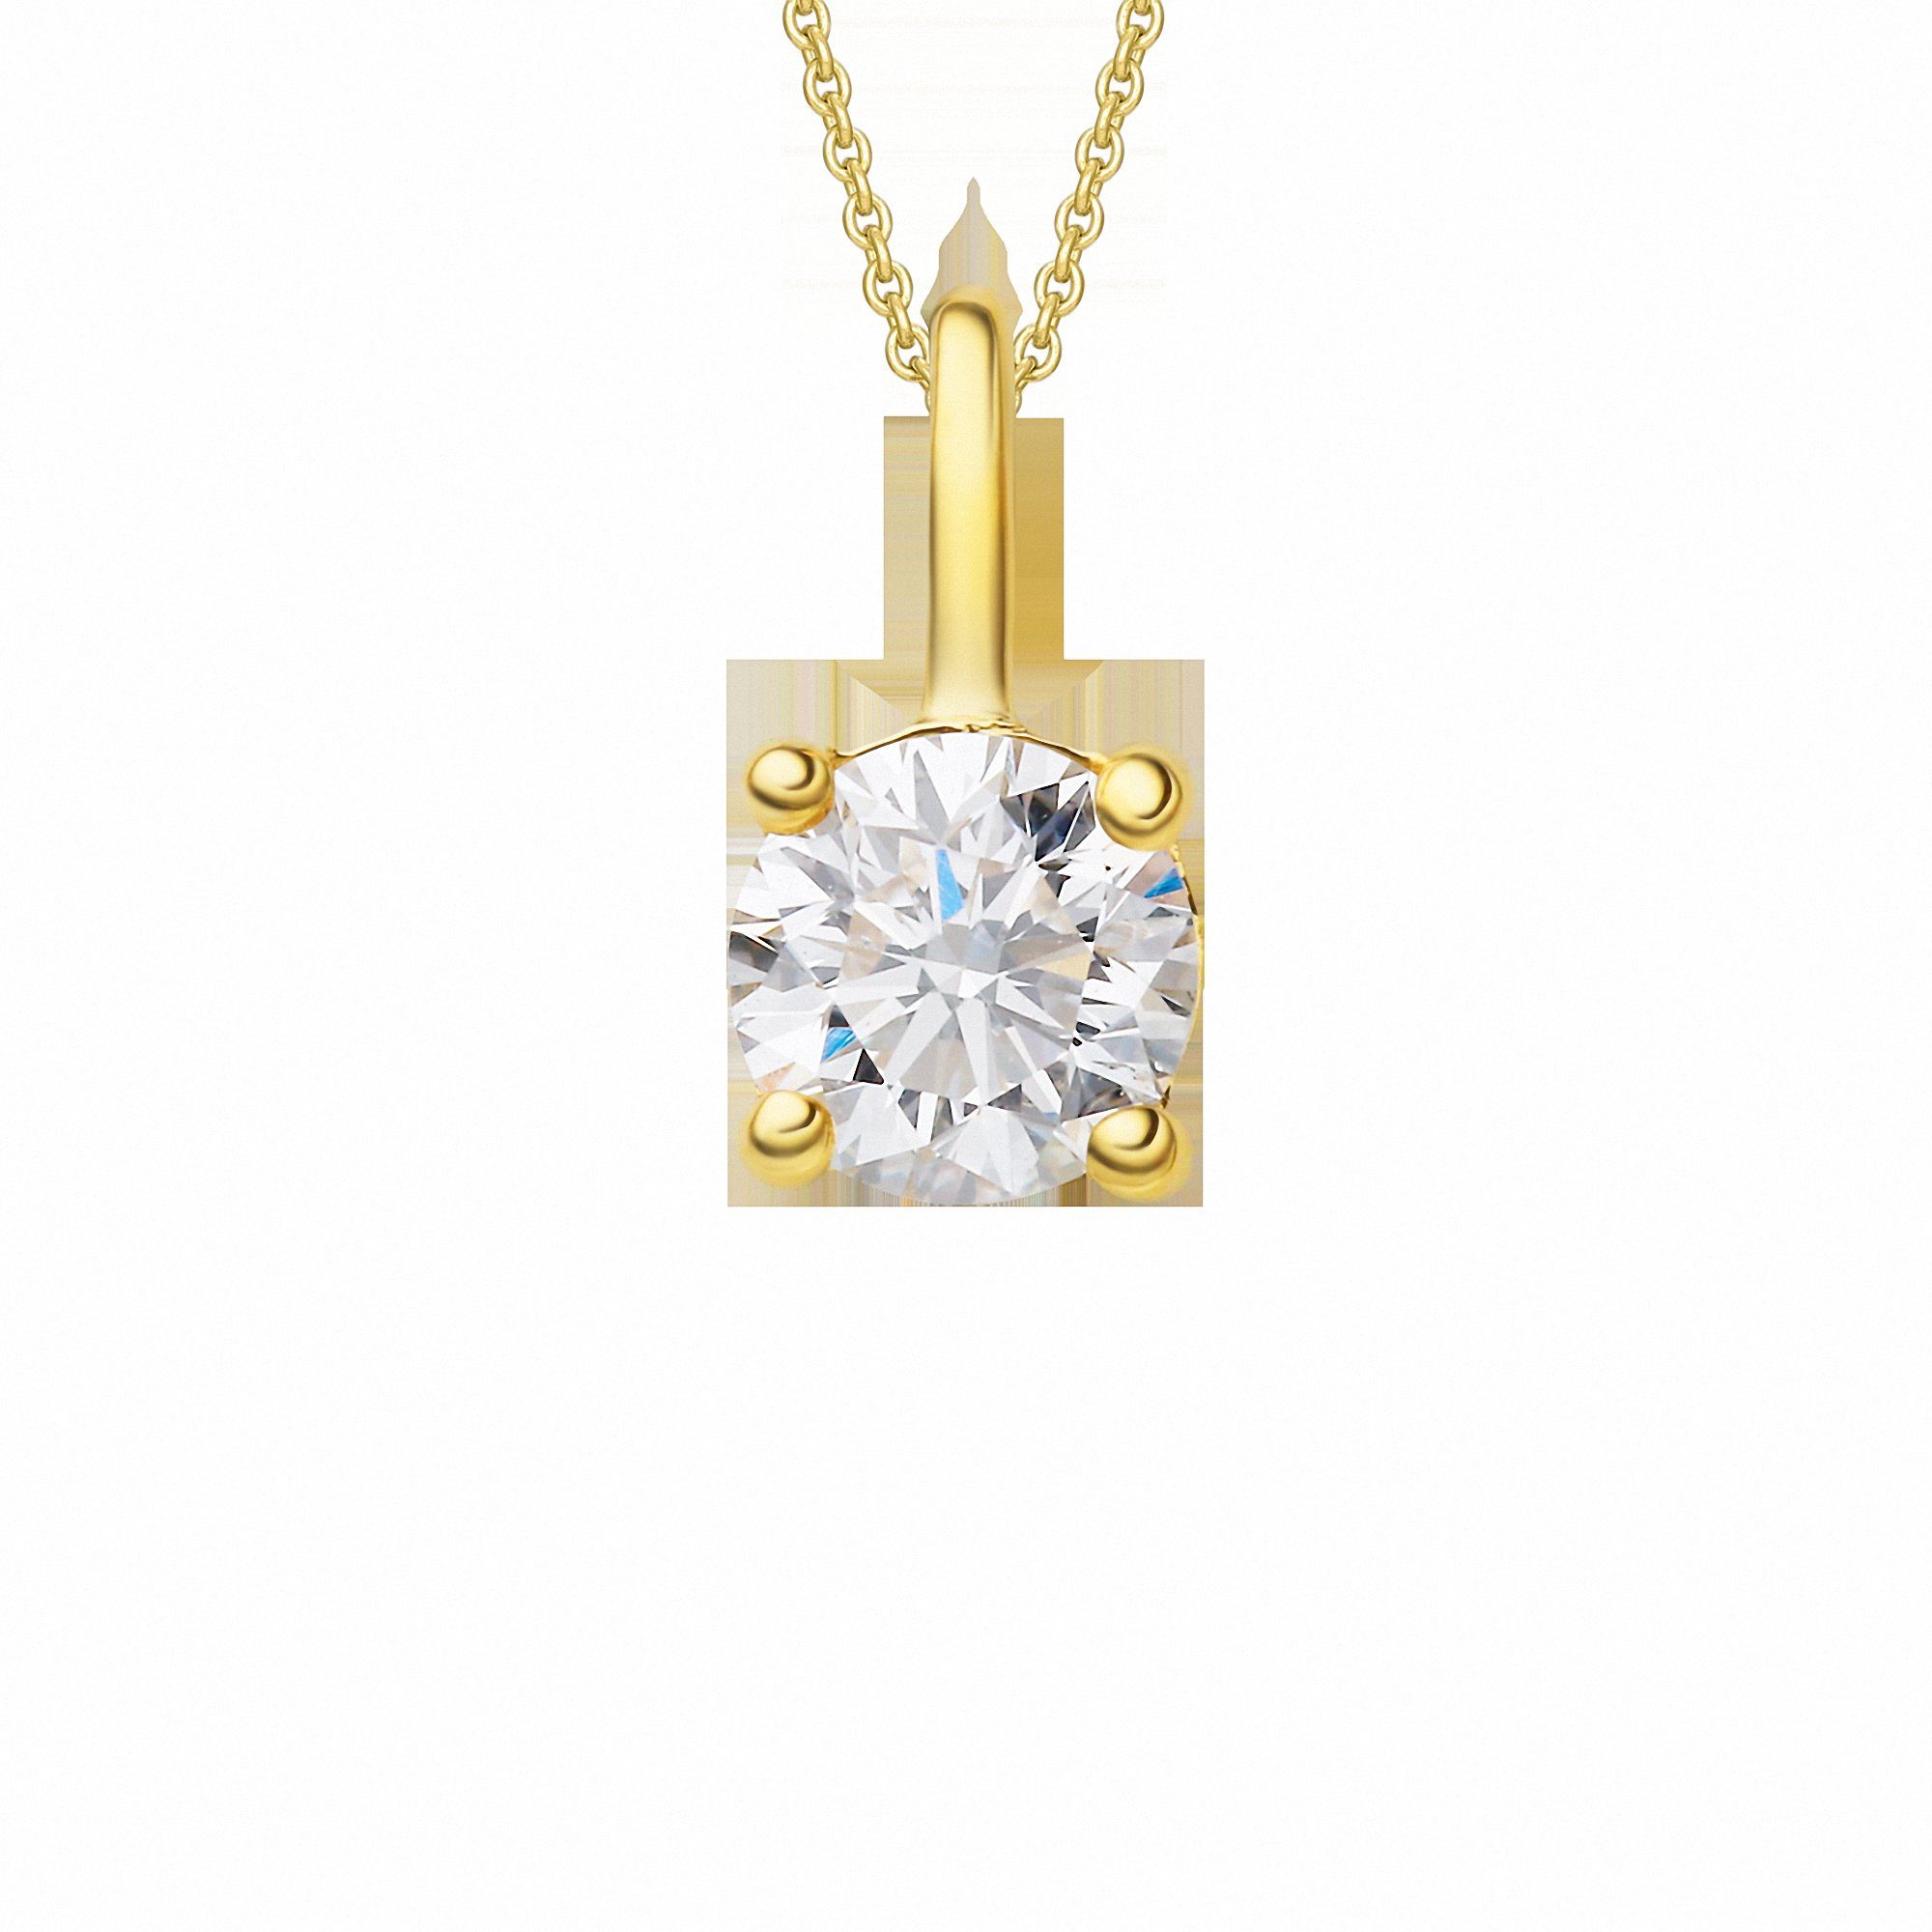 ONE ELEMENT Kettenanhänger aus Schmuck Damen Diamant Gelbgold, 585 0.25 ct Gold Anhänger Brillant